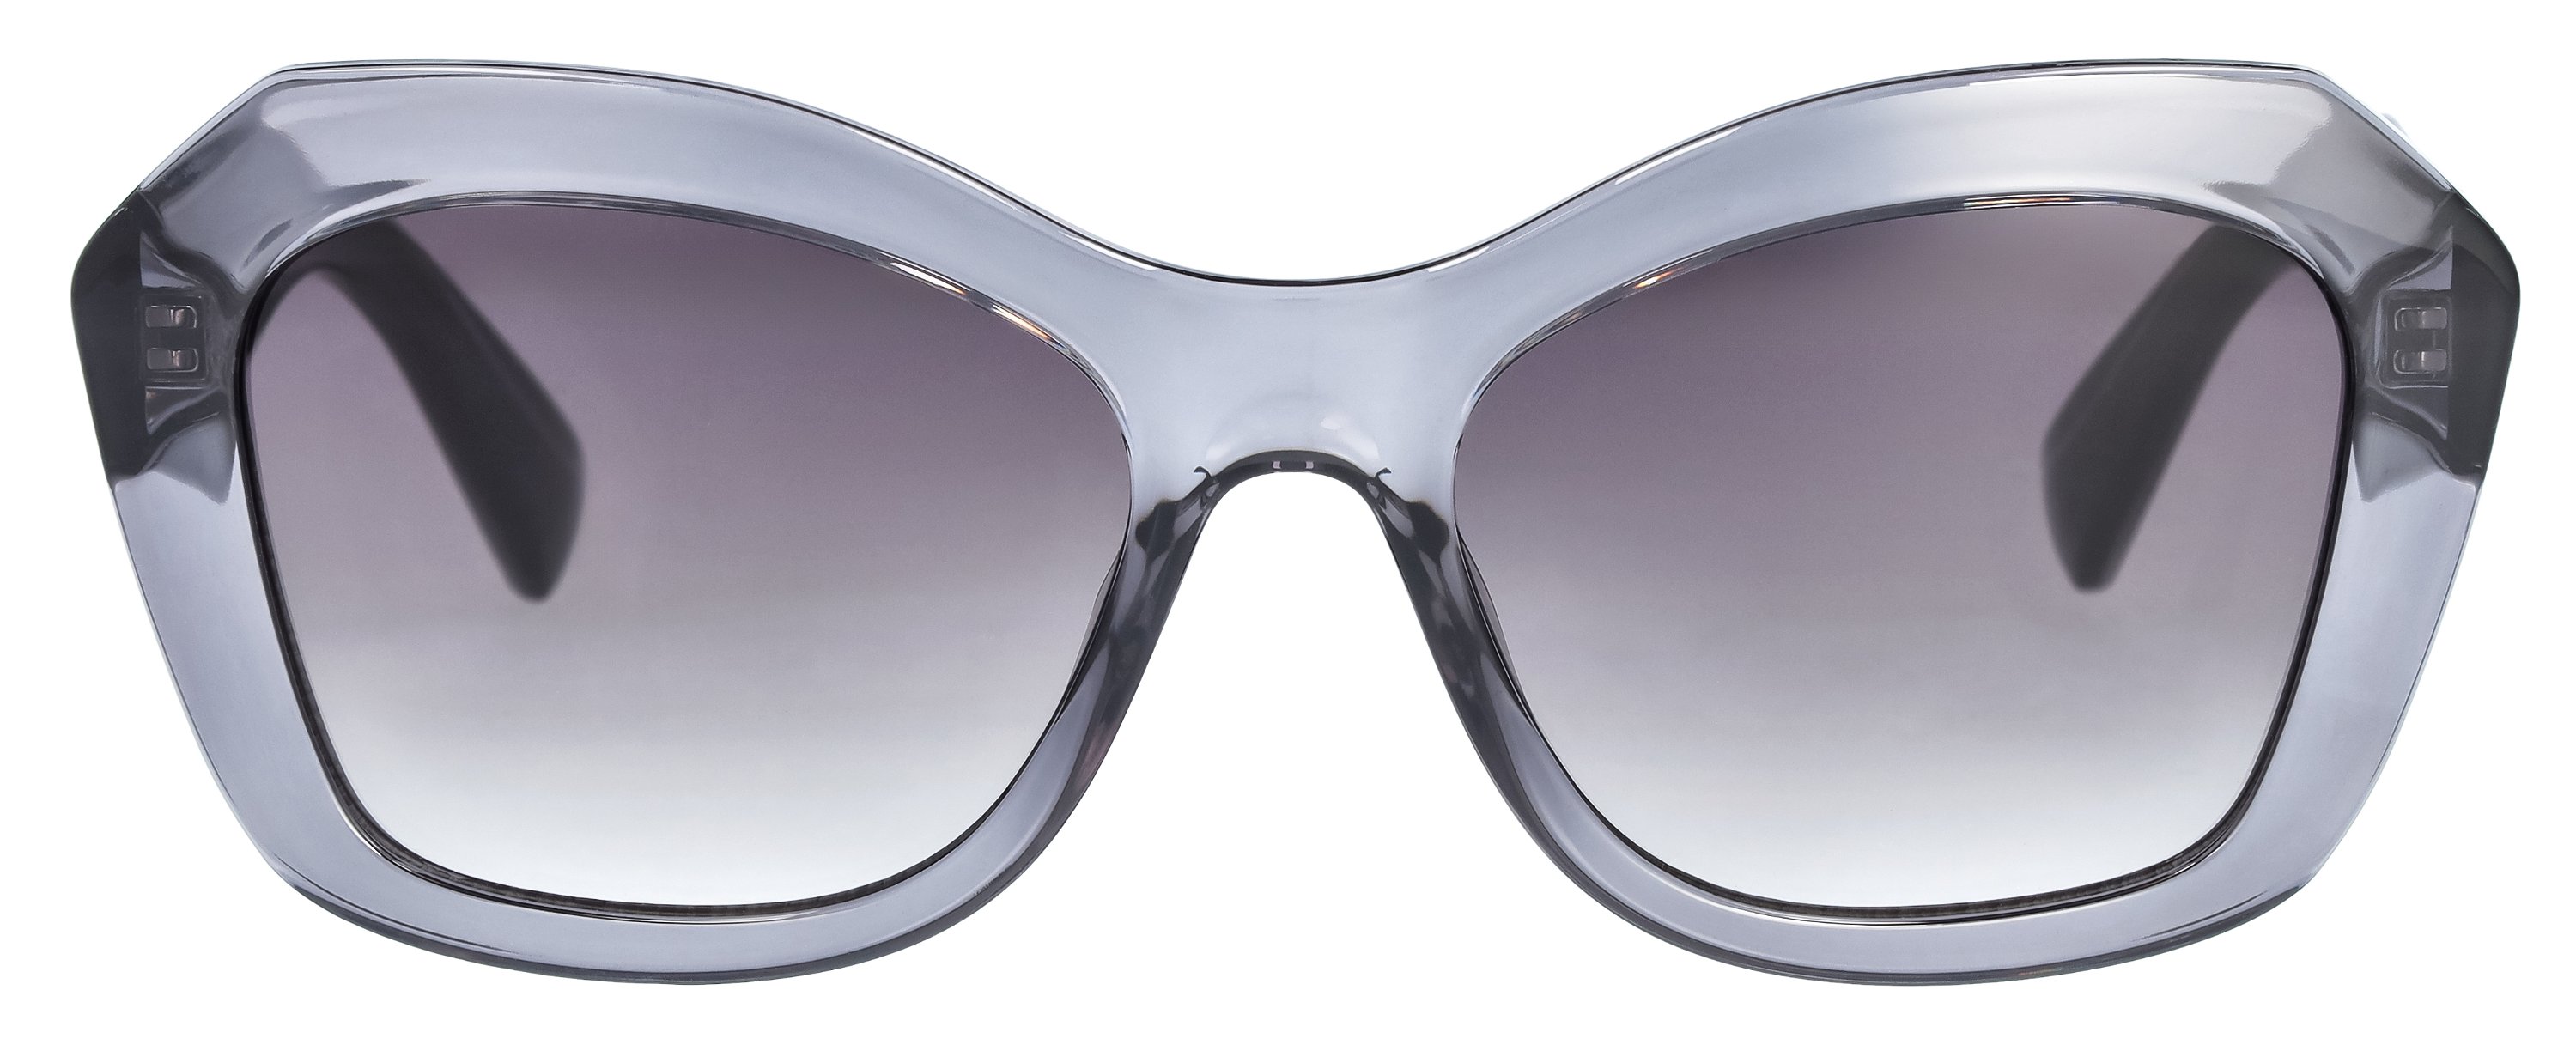 Das Bild zeigt die Sonnenbrille 721141 von der Marke Abele Optik in grau.